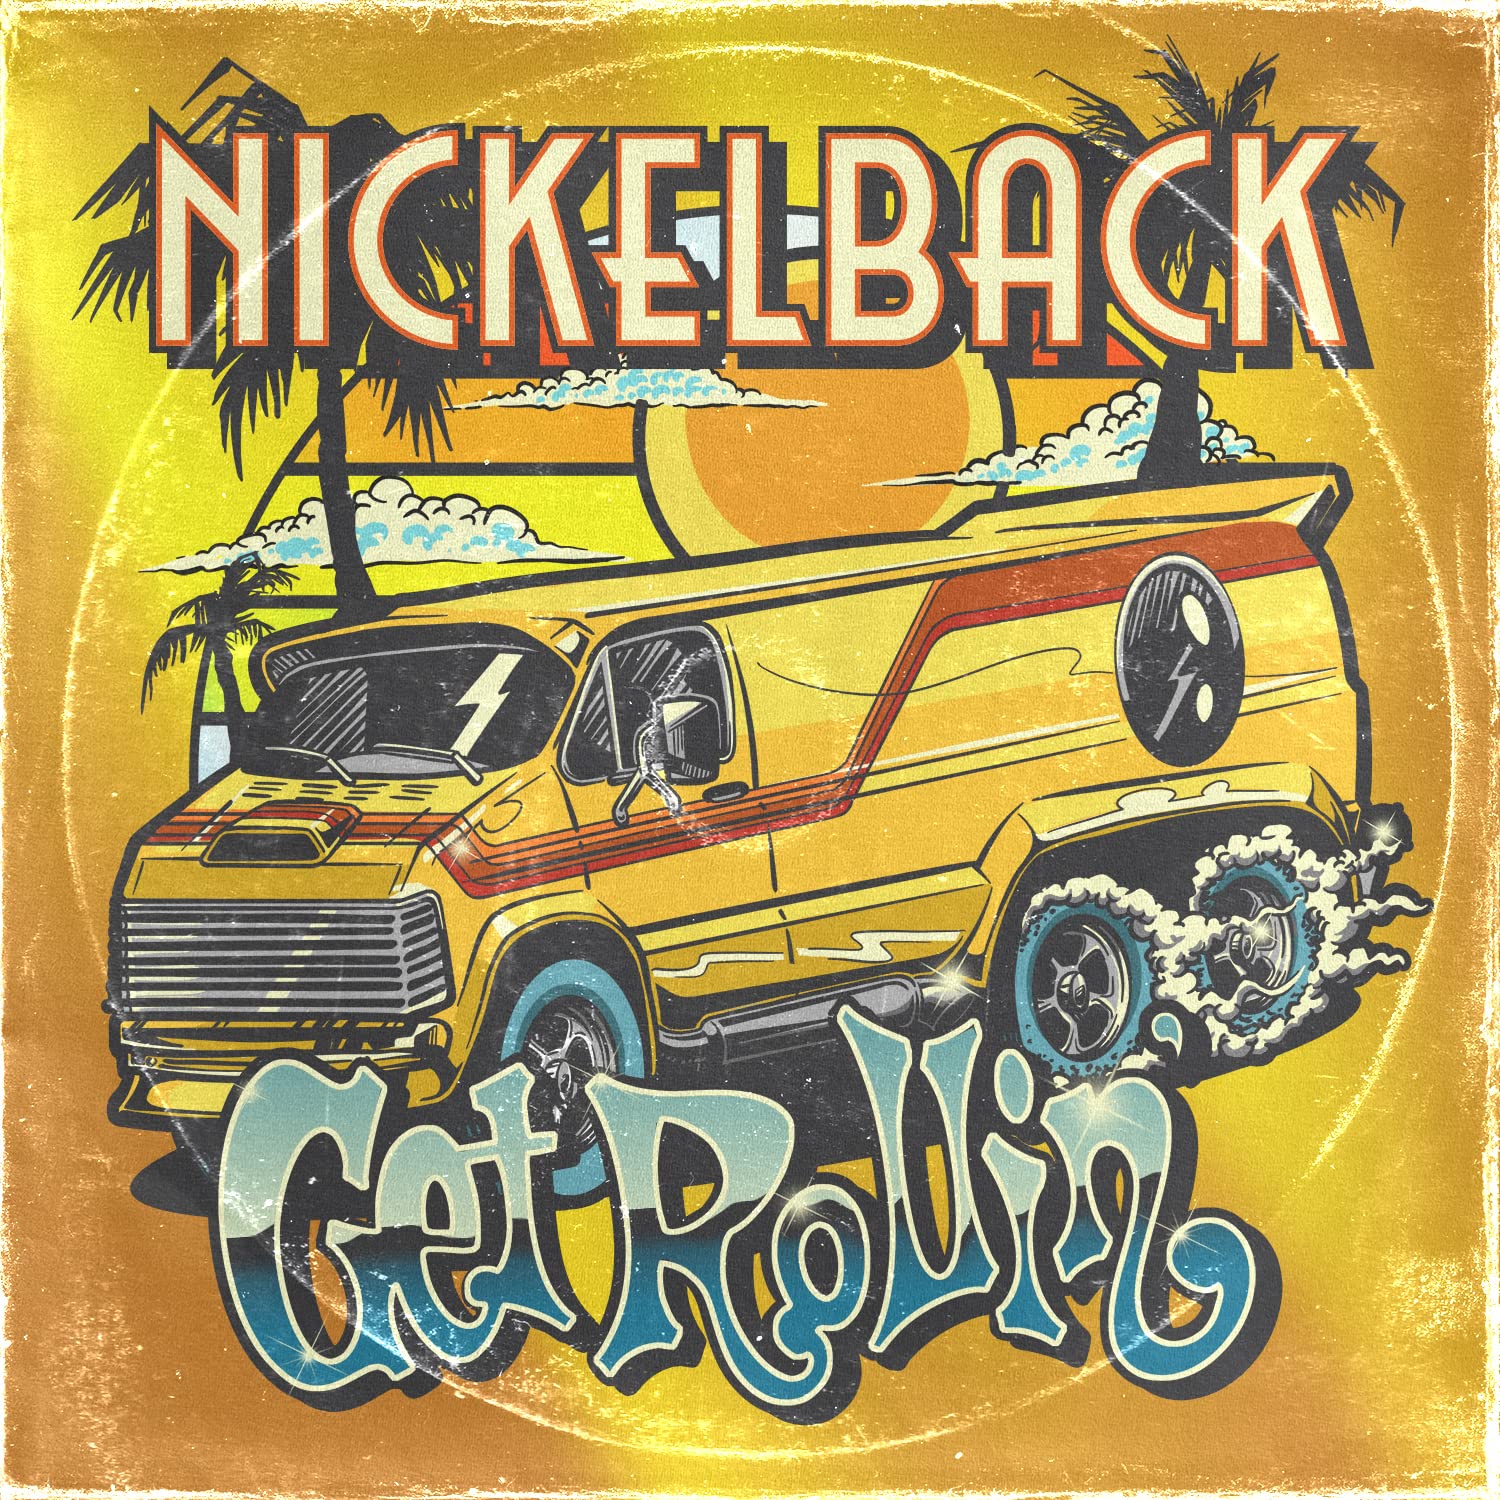 Nickelback — Skinny Little Missy cover artwork